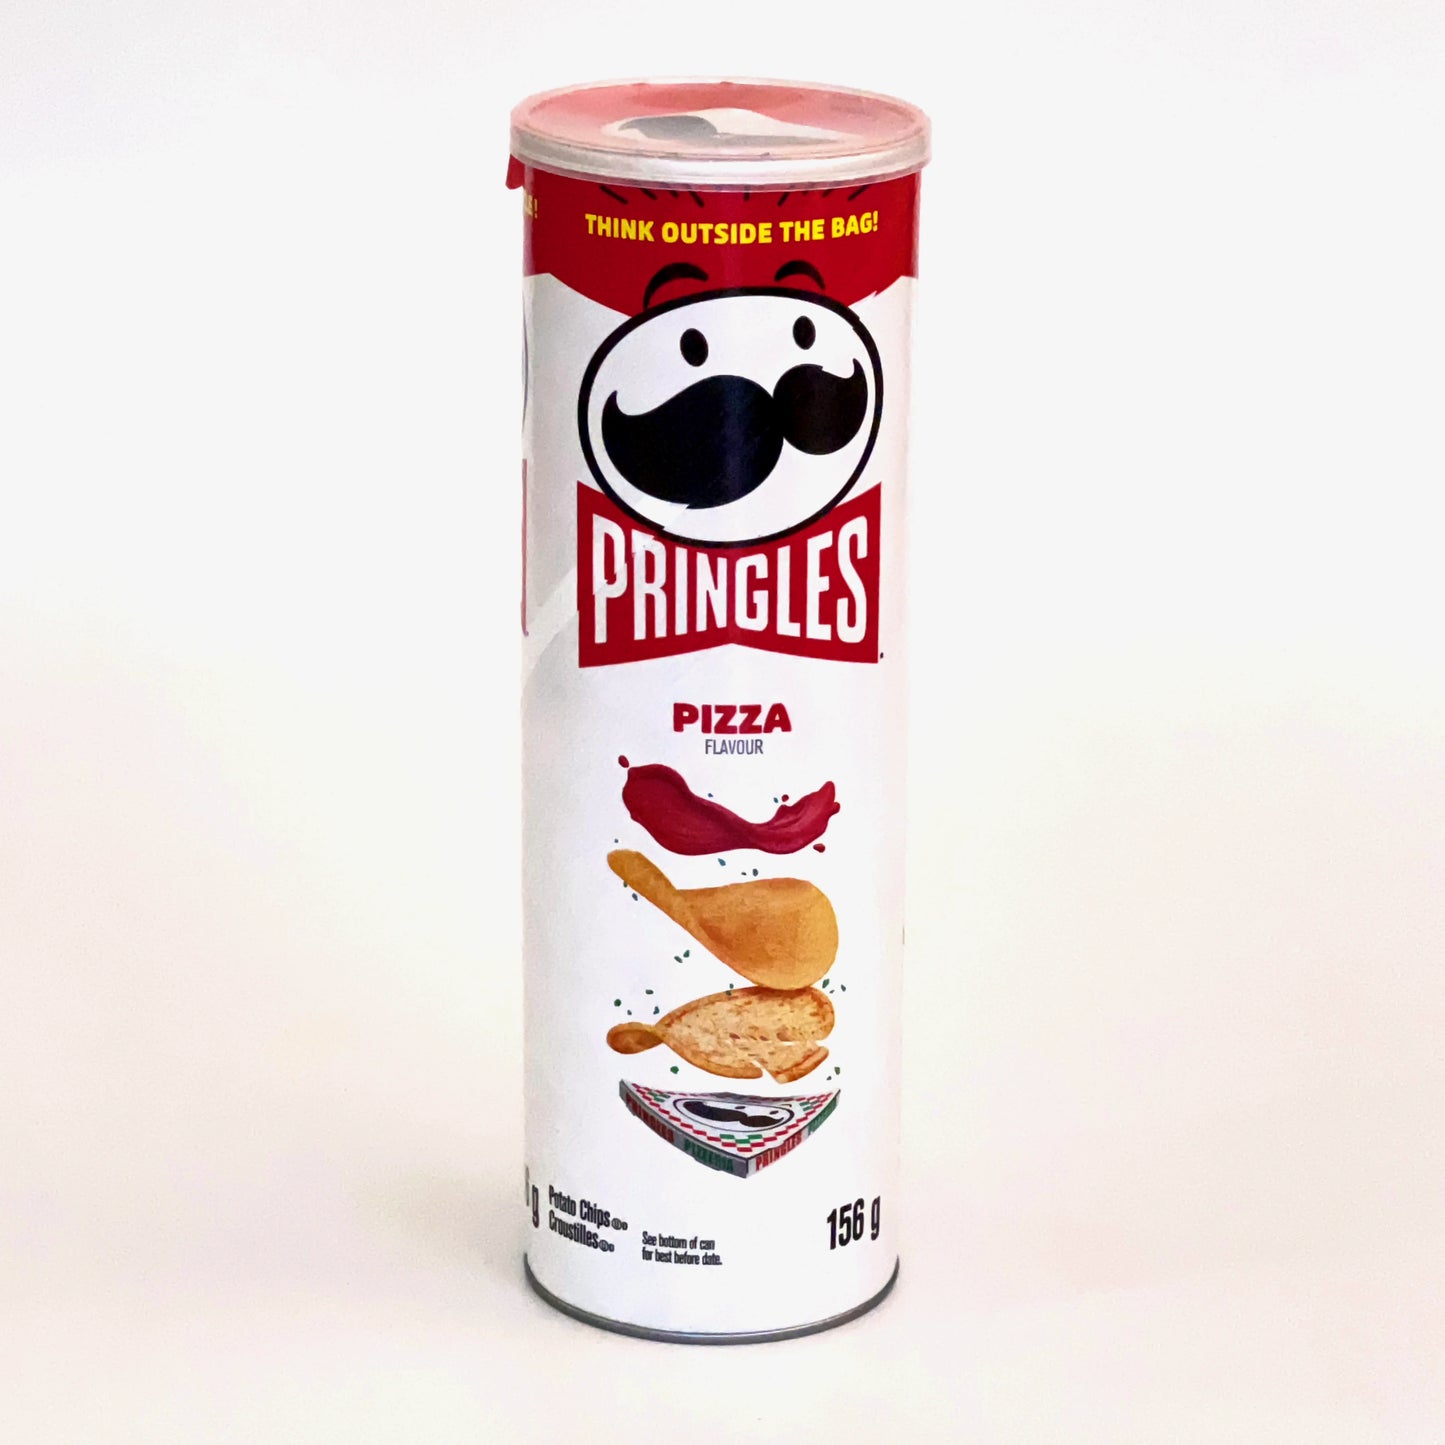 Stapelchips mit Pizzageschmack von der Marke Pringles